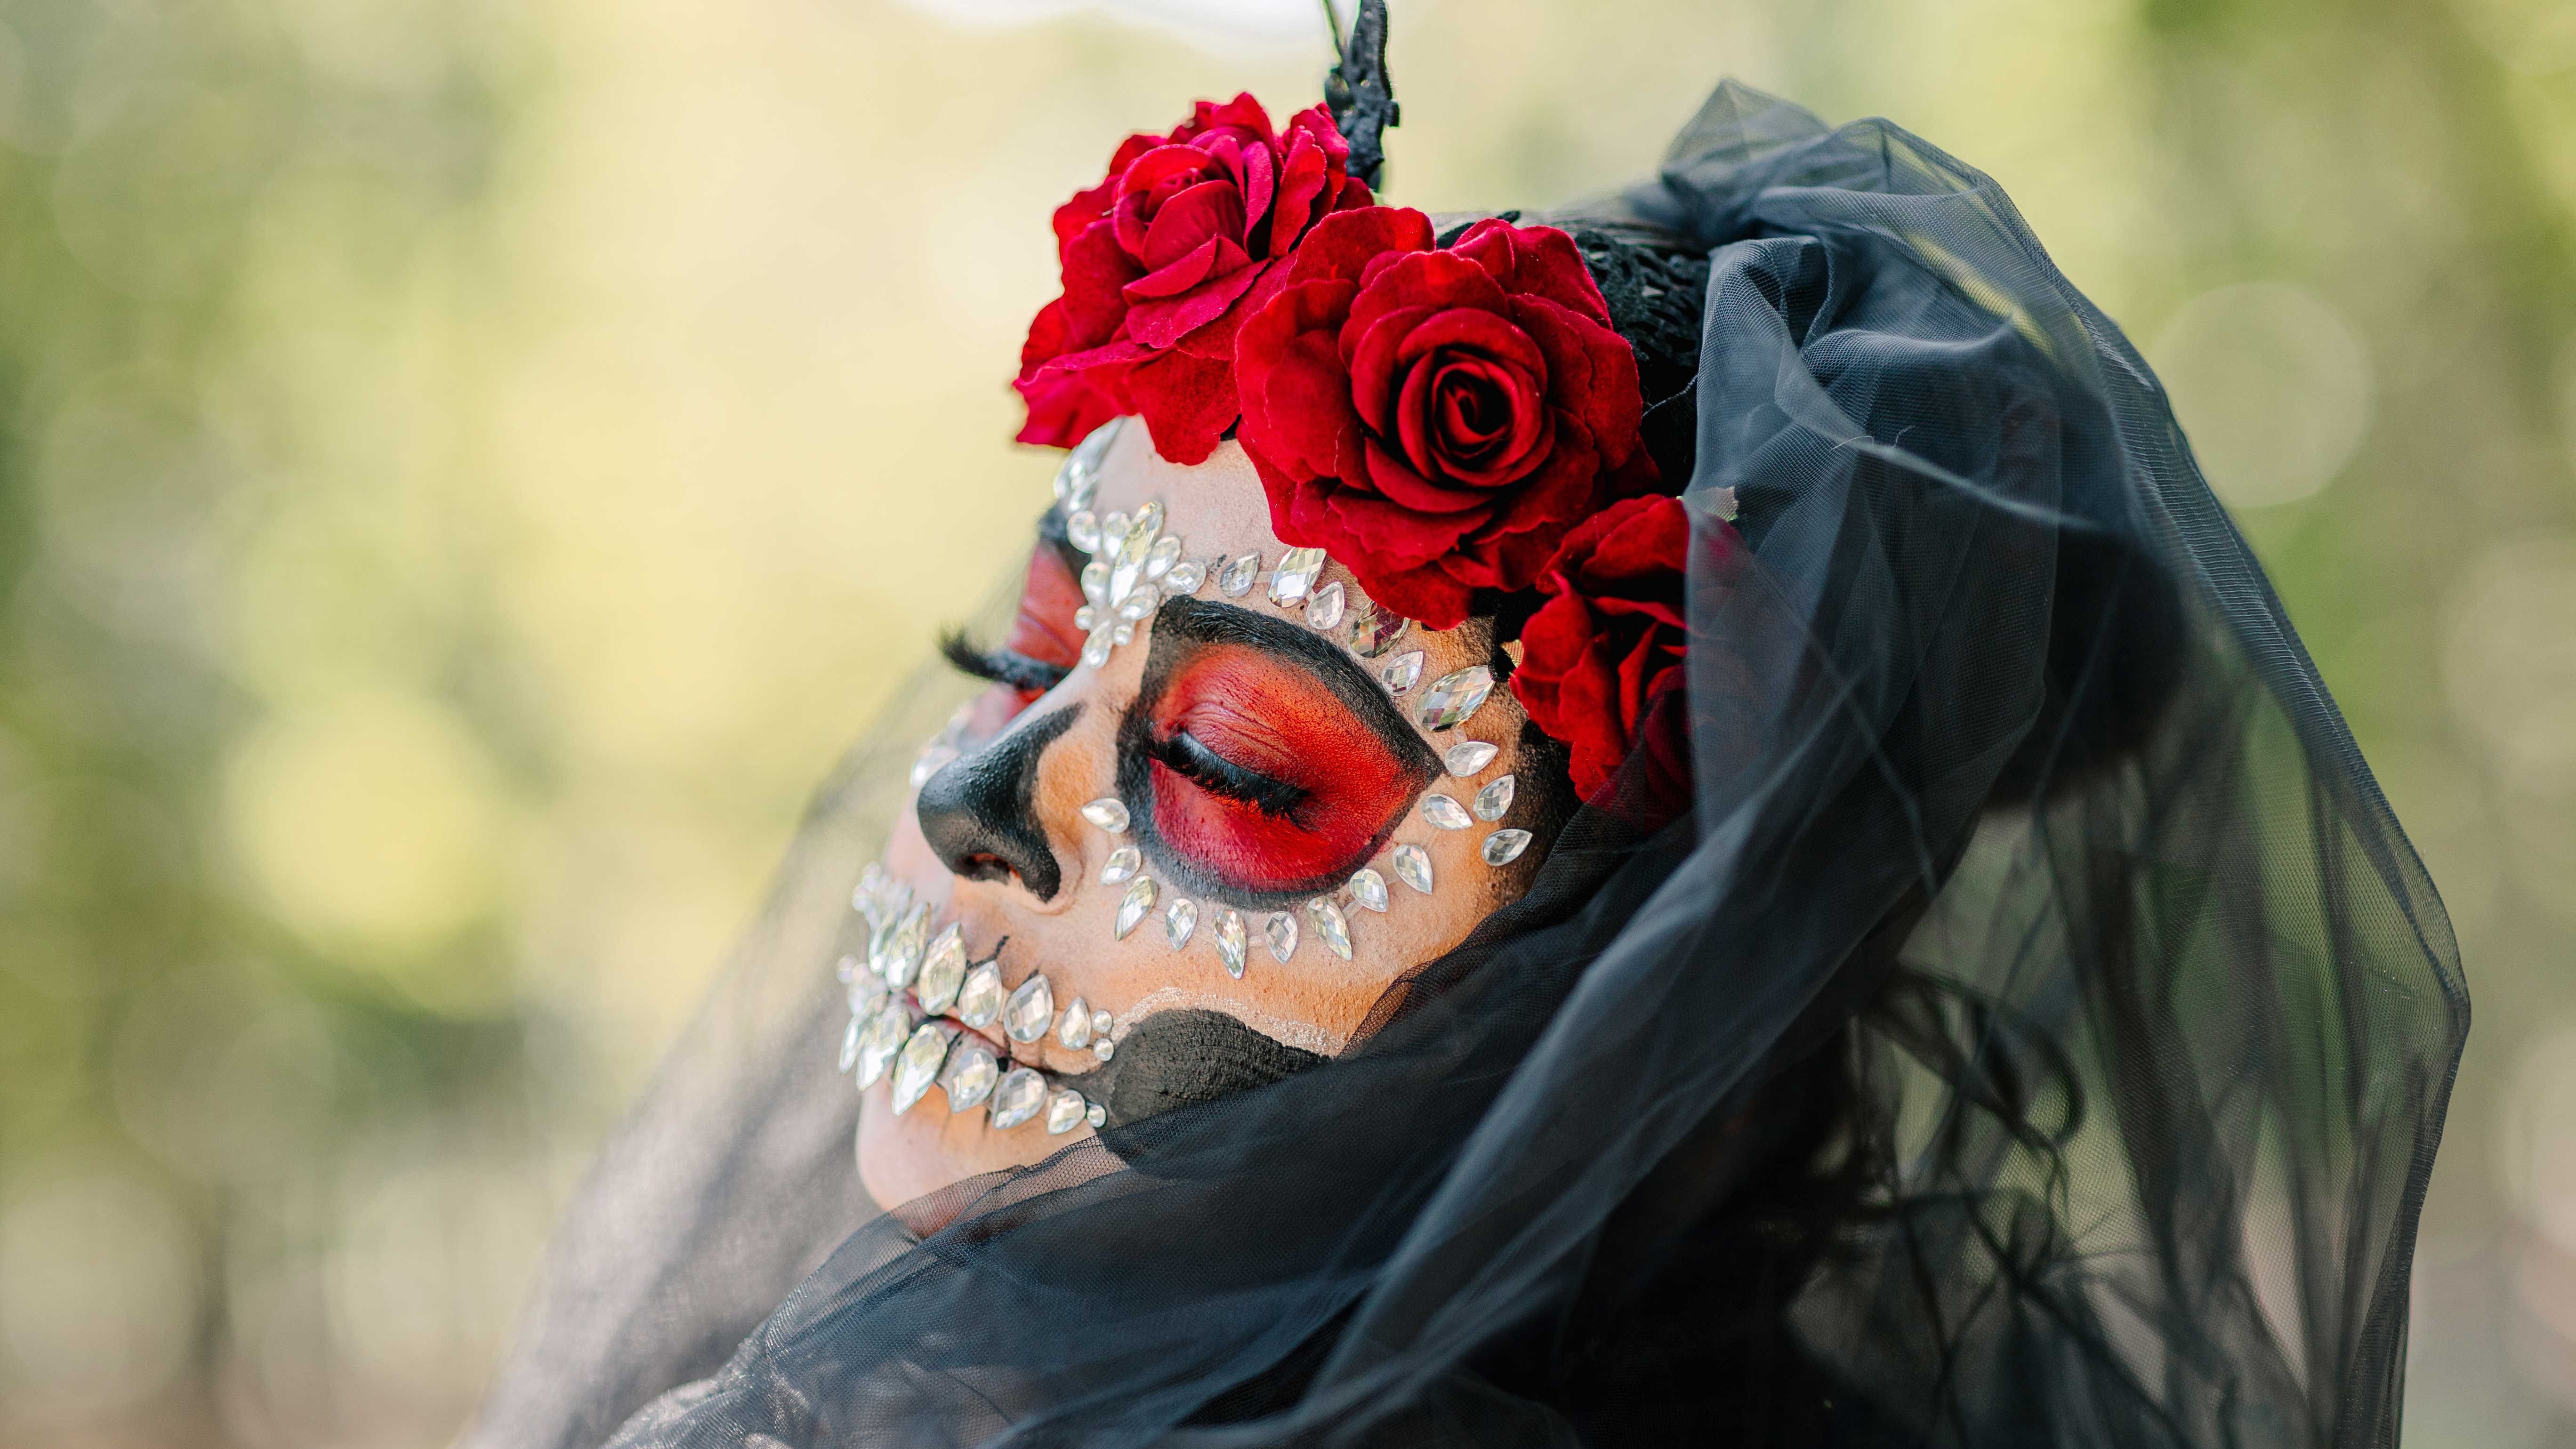 Top Day of the Dead Facts to Know - Día de los Muertos History